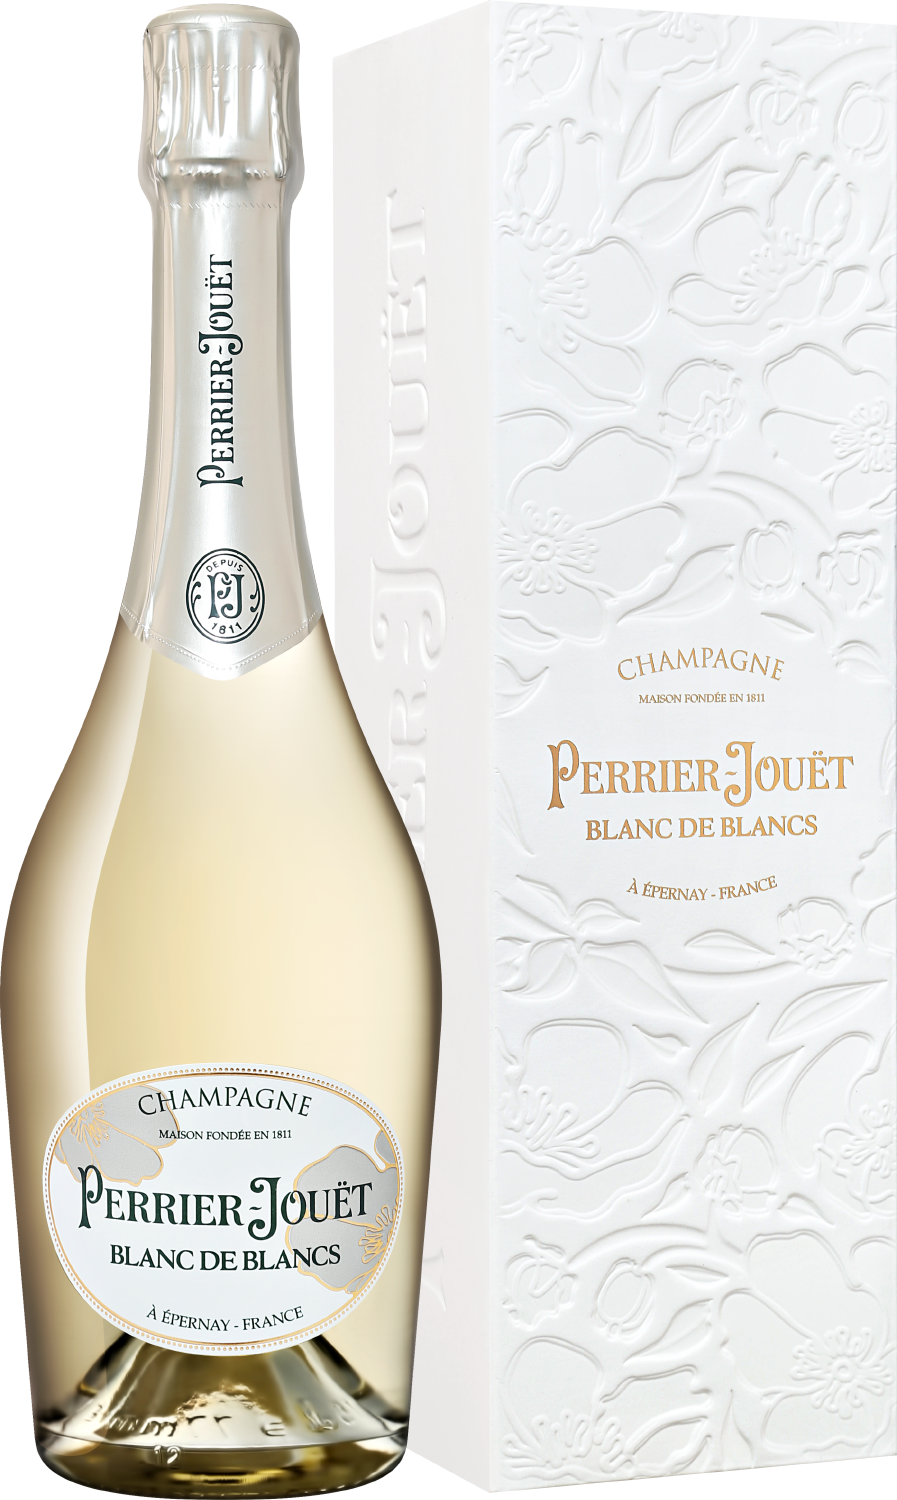 Perrier-Jouet Blanc De Blancs Champagne AOC Brut pascal bouchard blancs cailloux petit chablis aoc